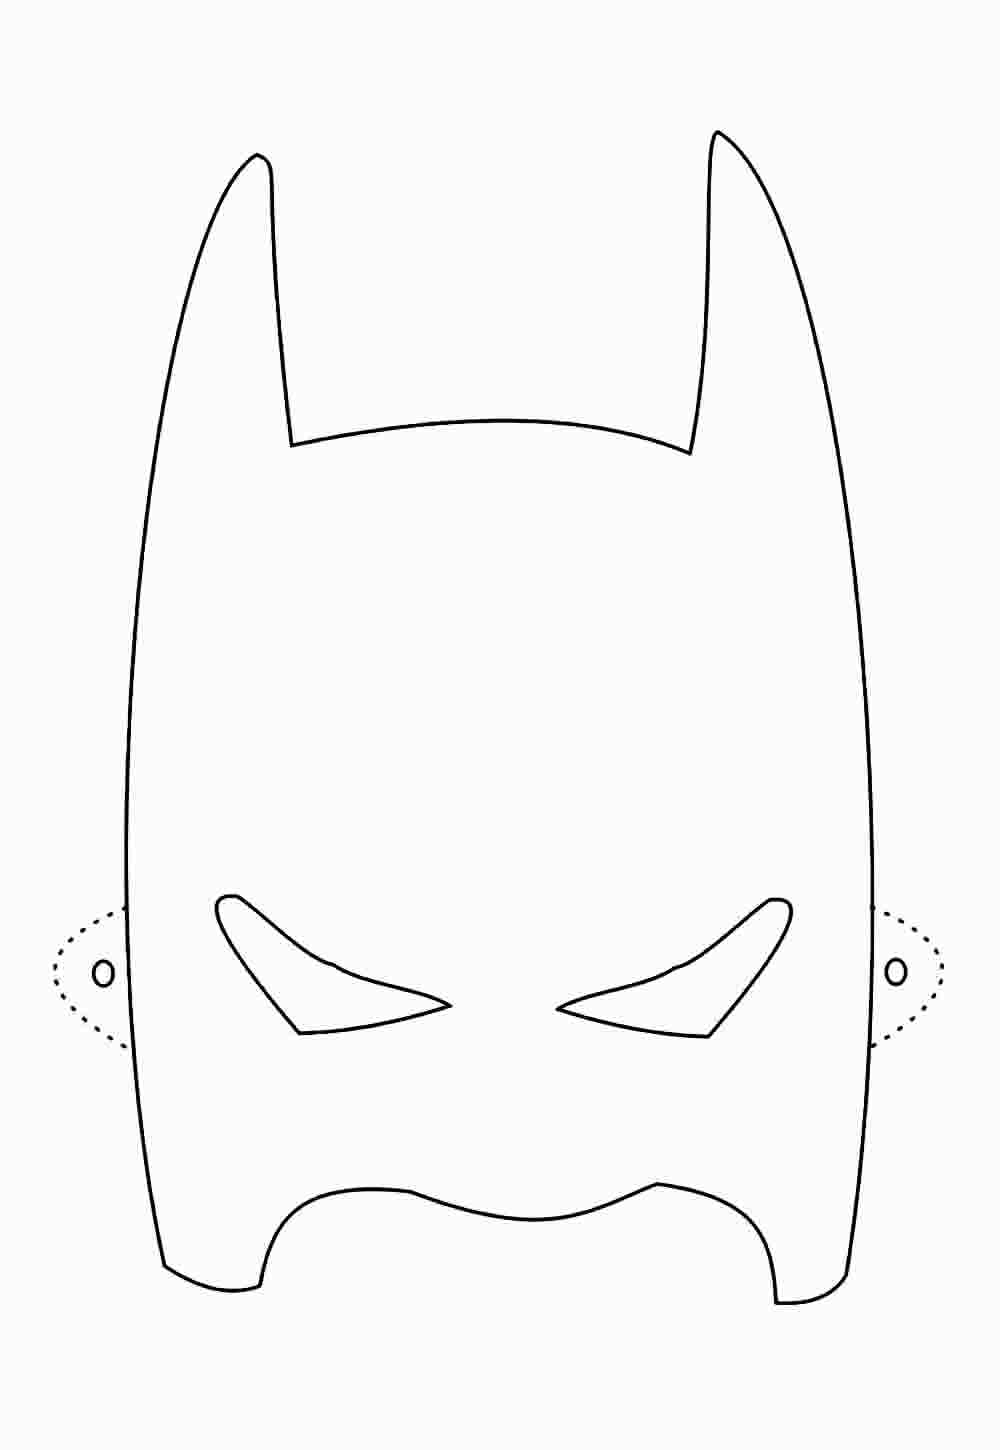 Máscara do Batman